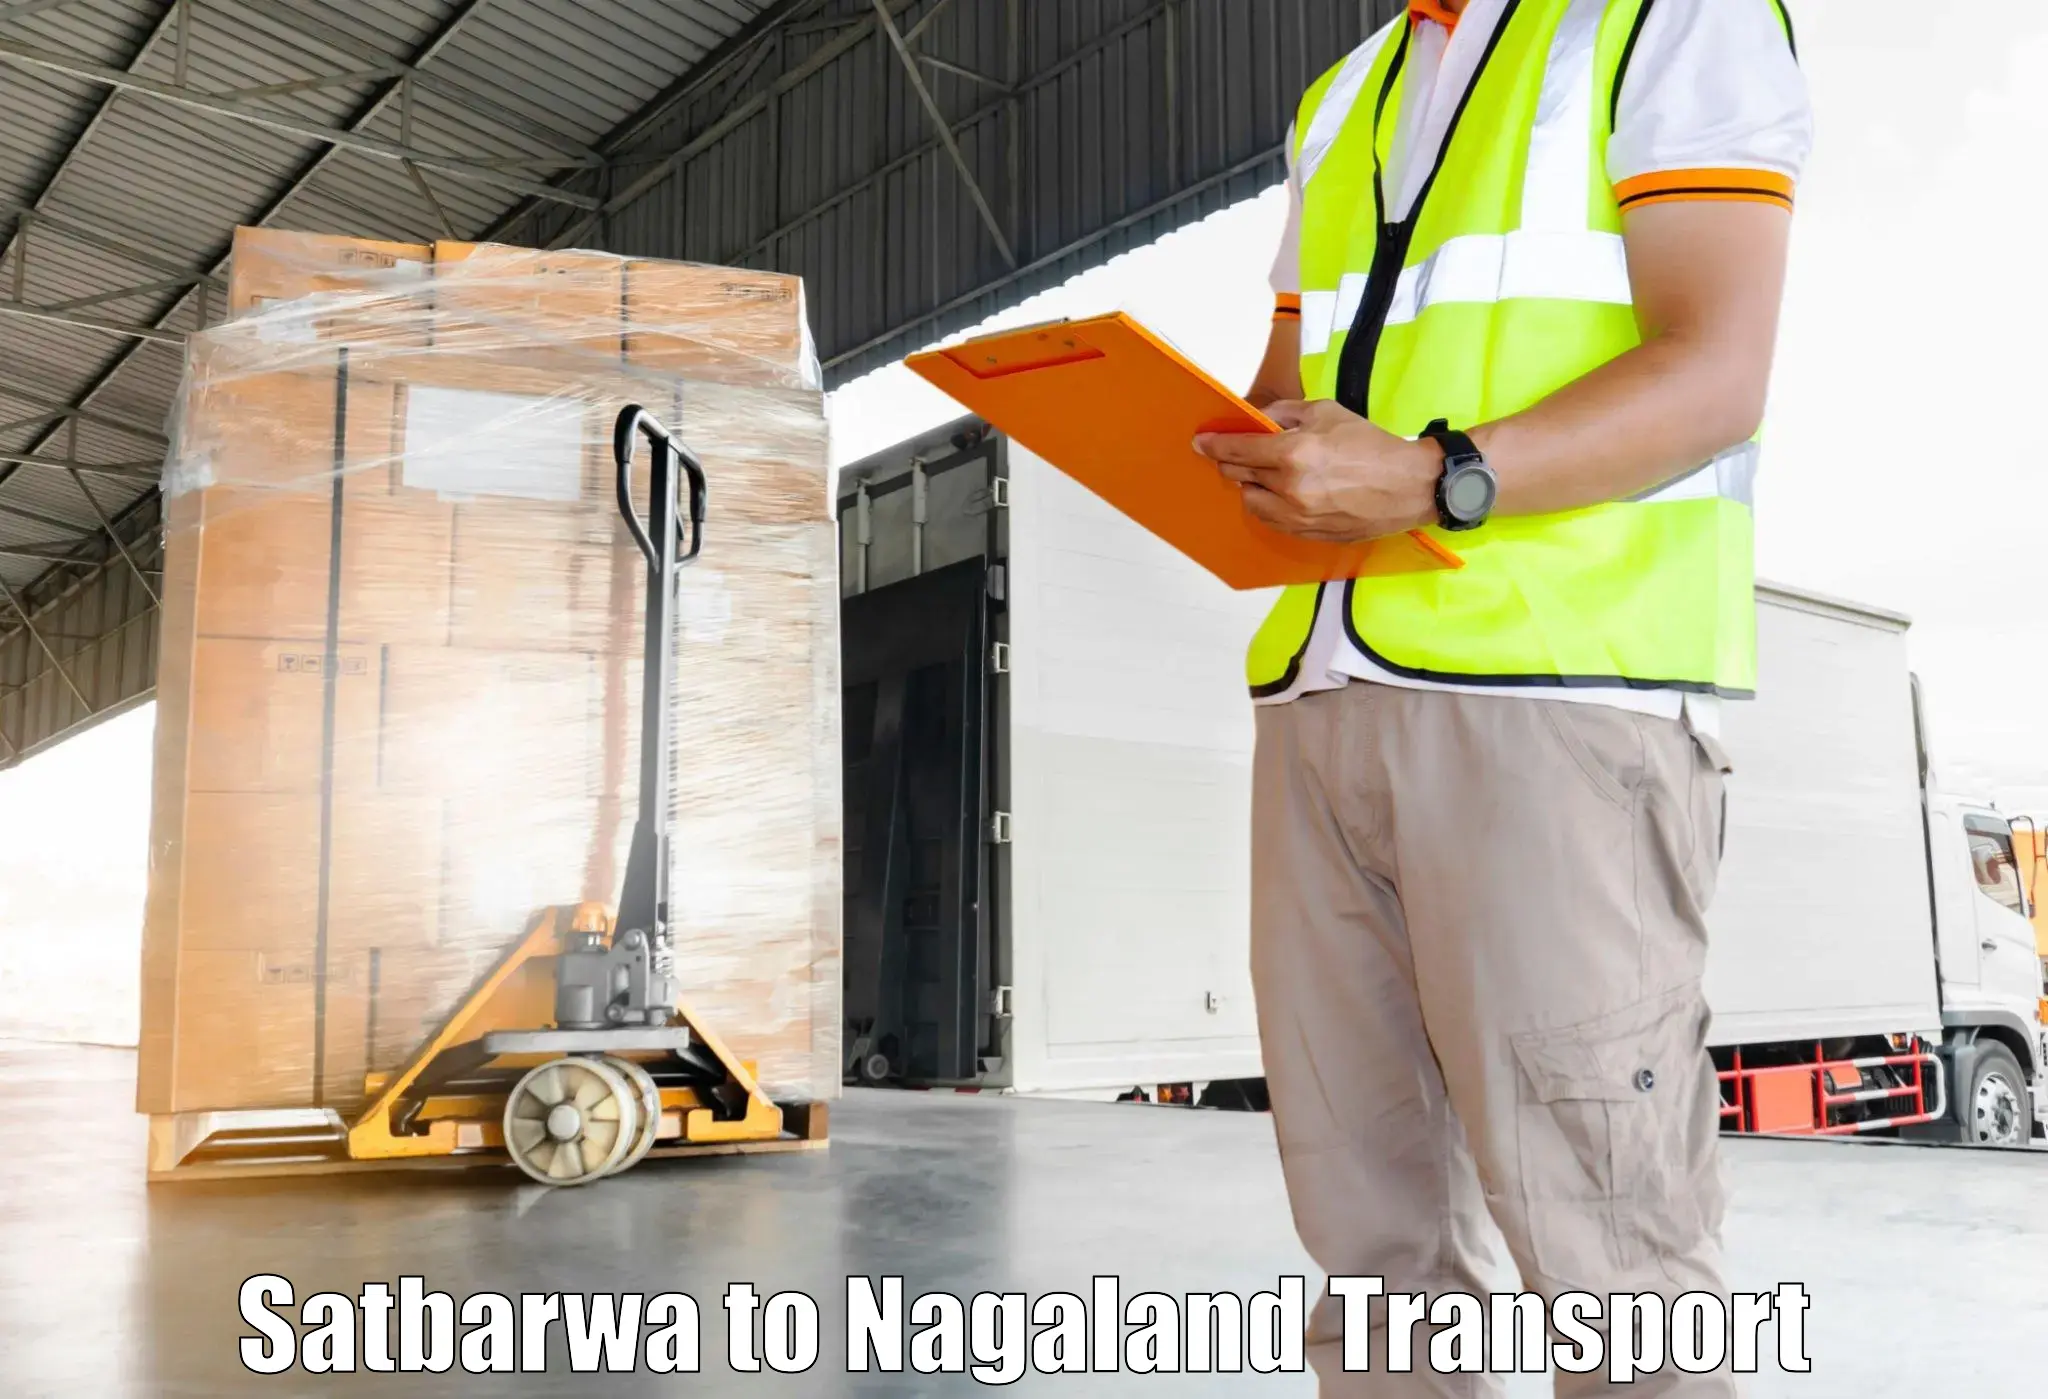 Cycle transportation service Satbarwa to NIT Nagaland